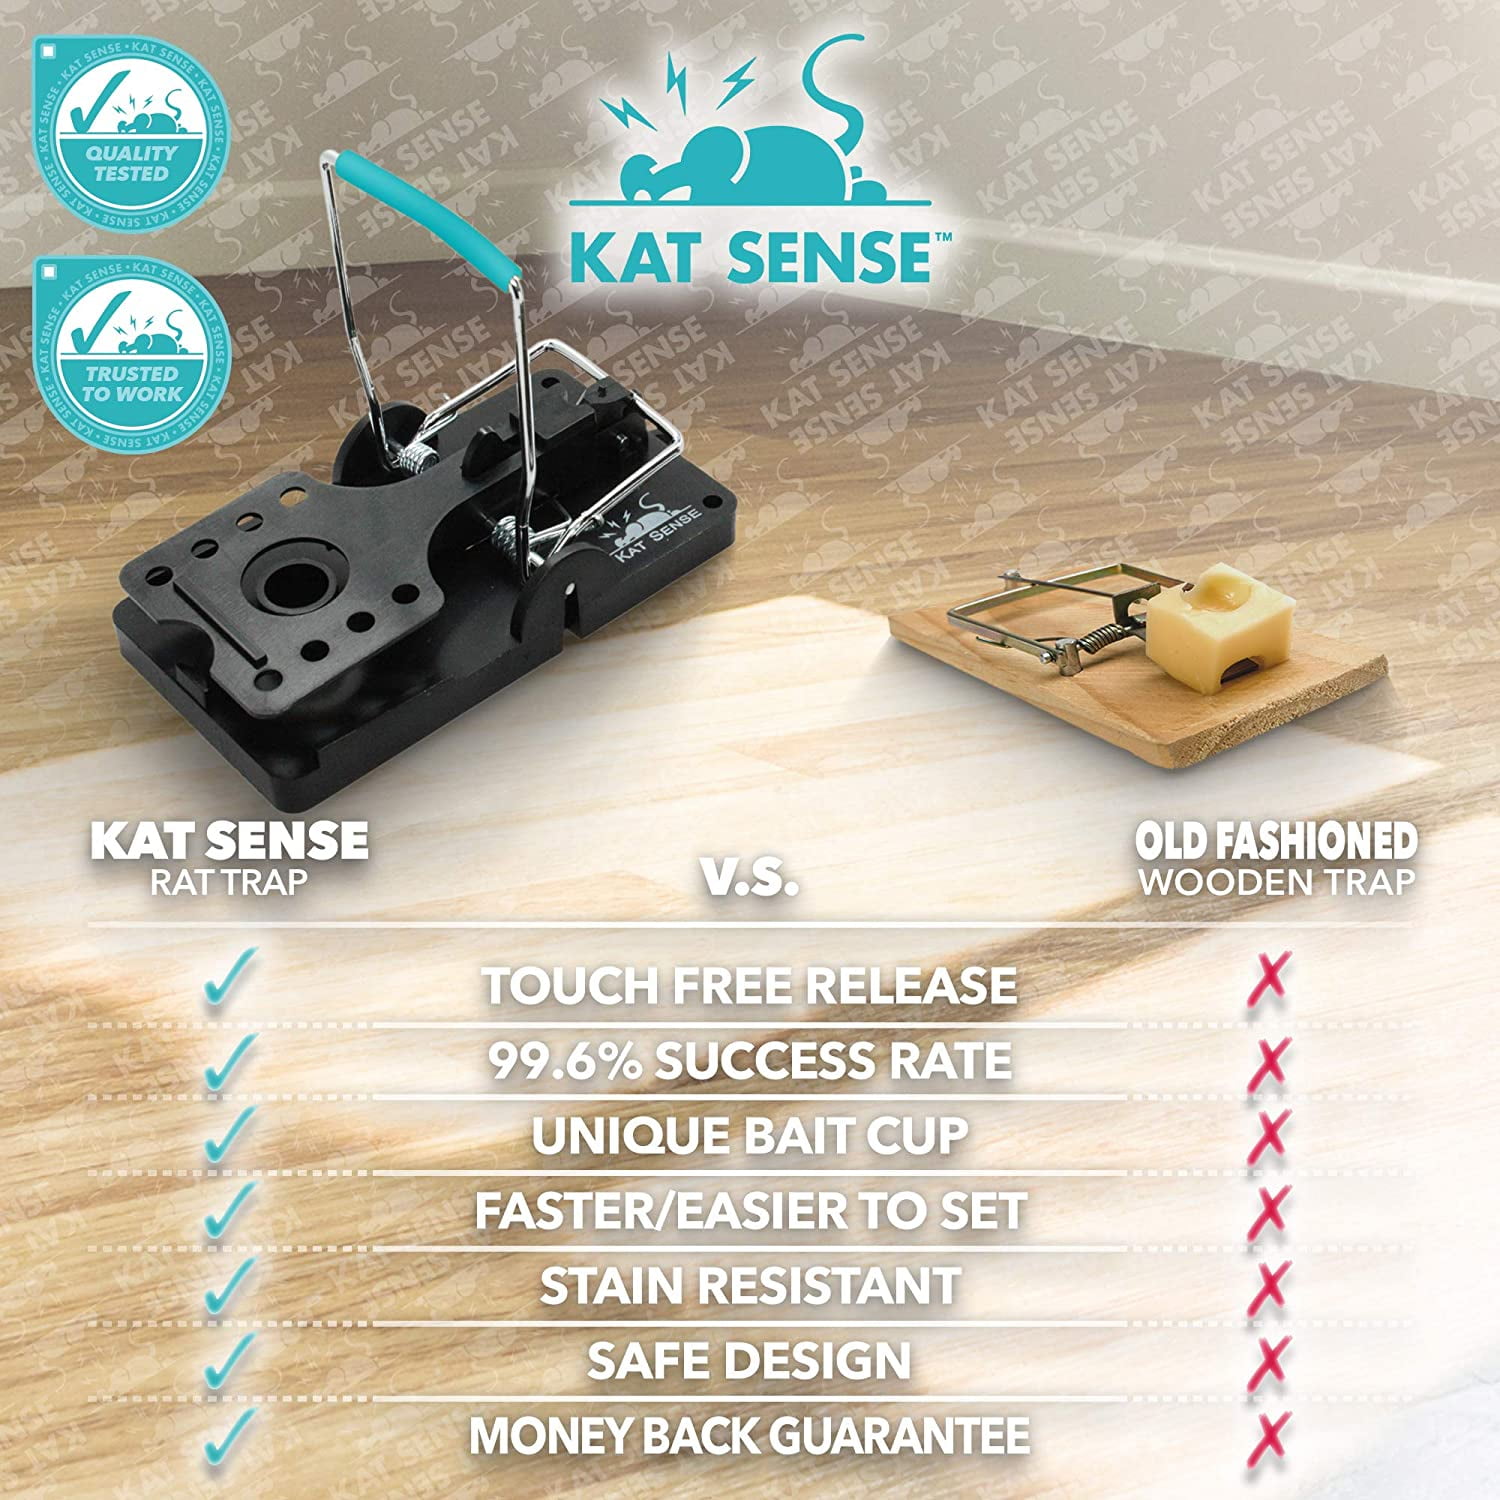 Kat Sense